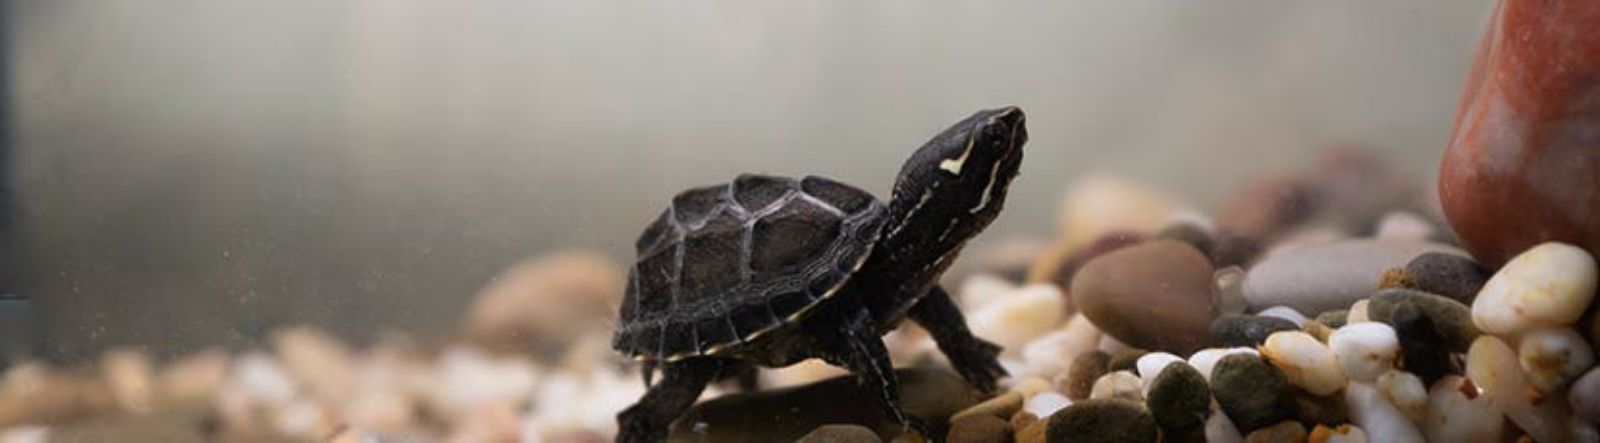 La tortue musquée : ce qu'il faut savoir